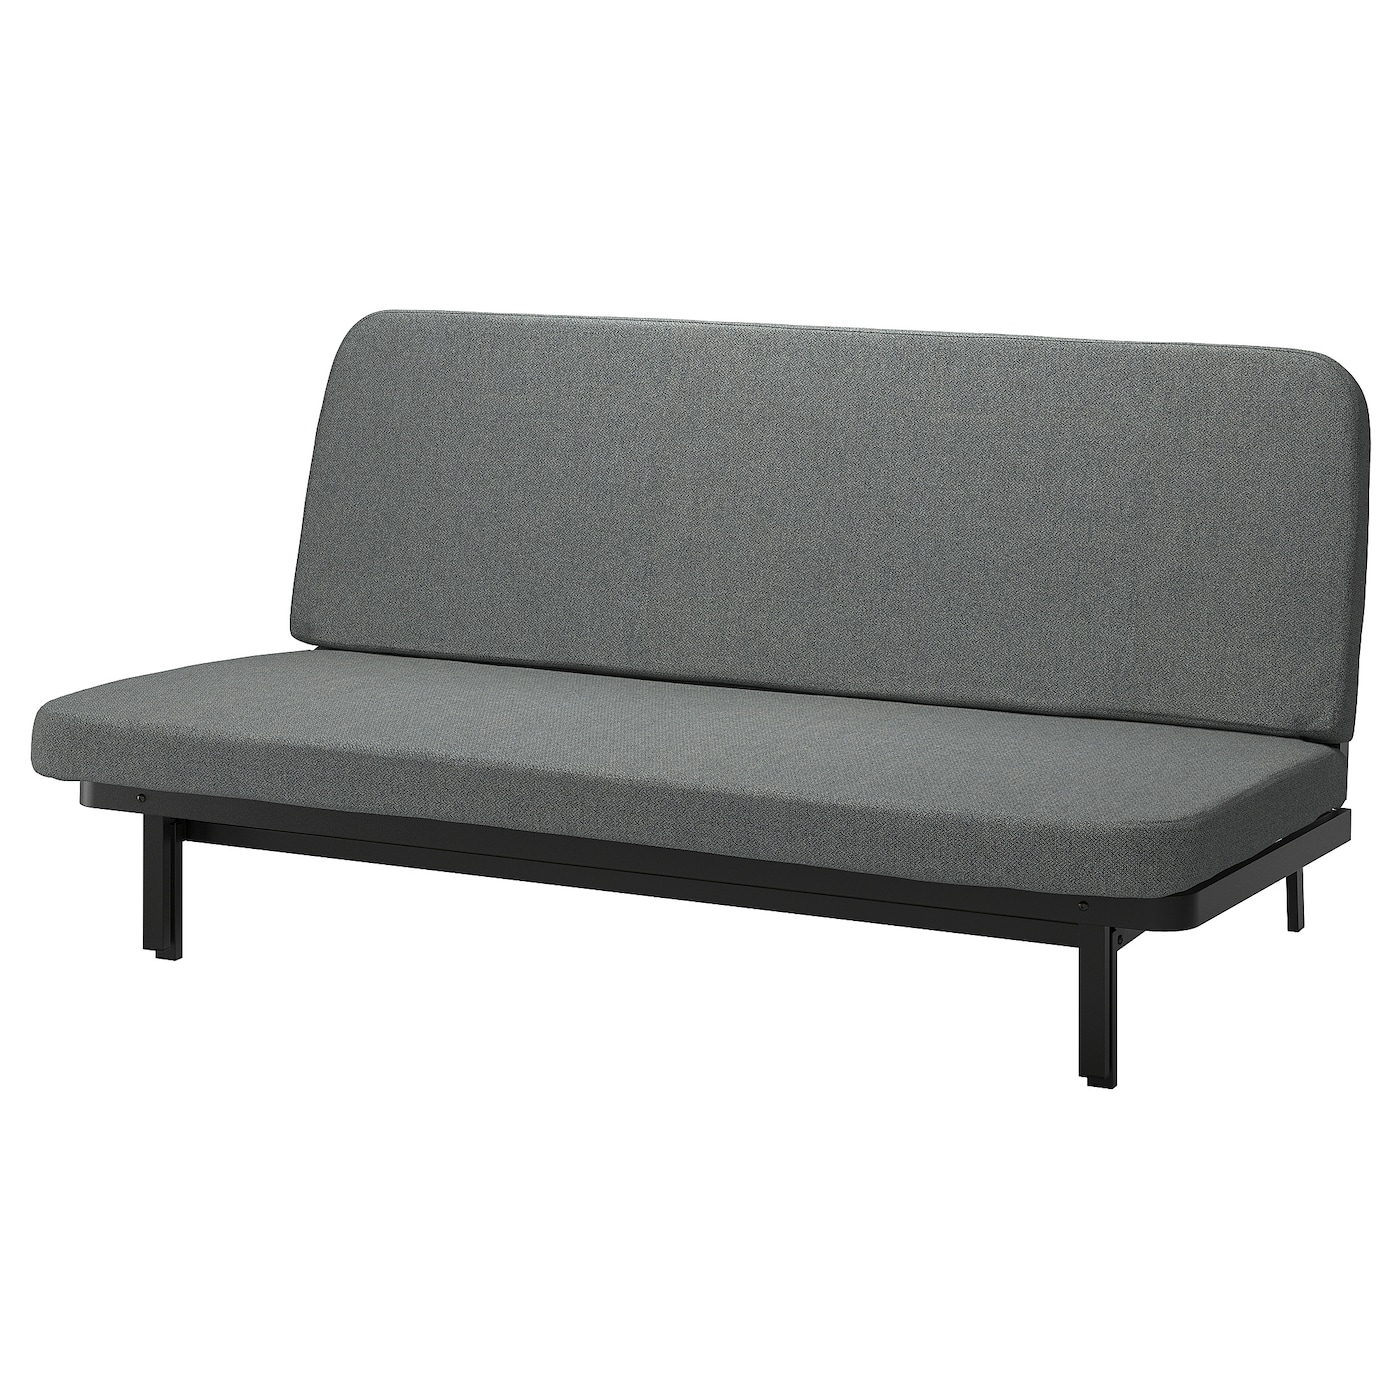 NYHAMN 3-местный диван-кровать, поролоновый матрас в комплекте/Скартофт черный/светло-серый IKEA домашний одноместный диван кровать спинка стул для спальни односпальный диван для девушек удобное эркерное окно маленький диван складн